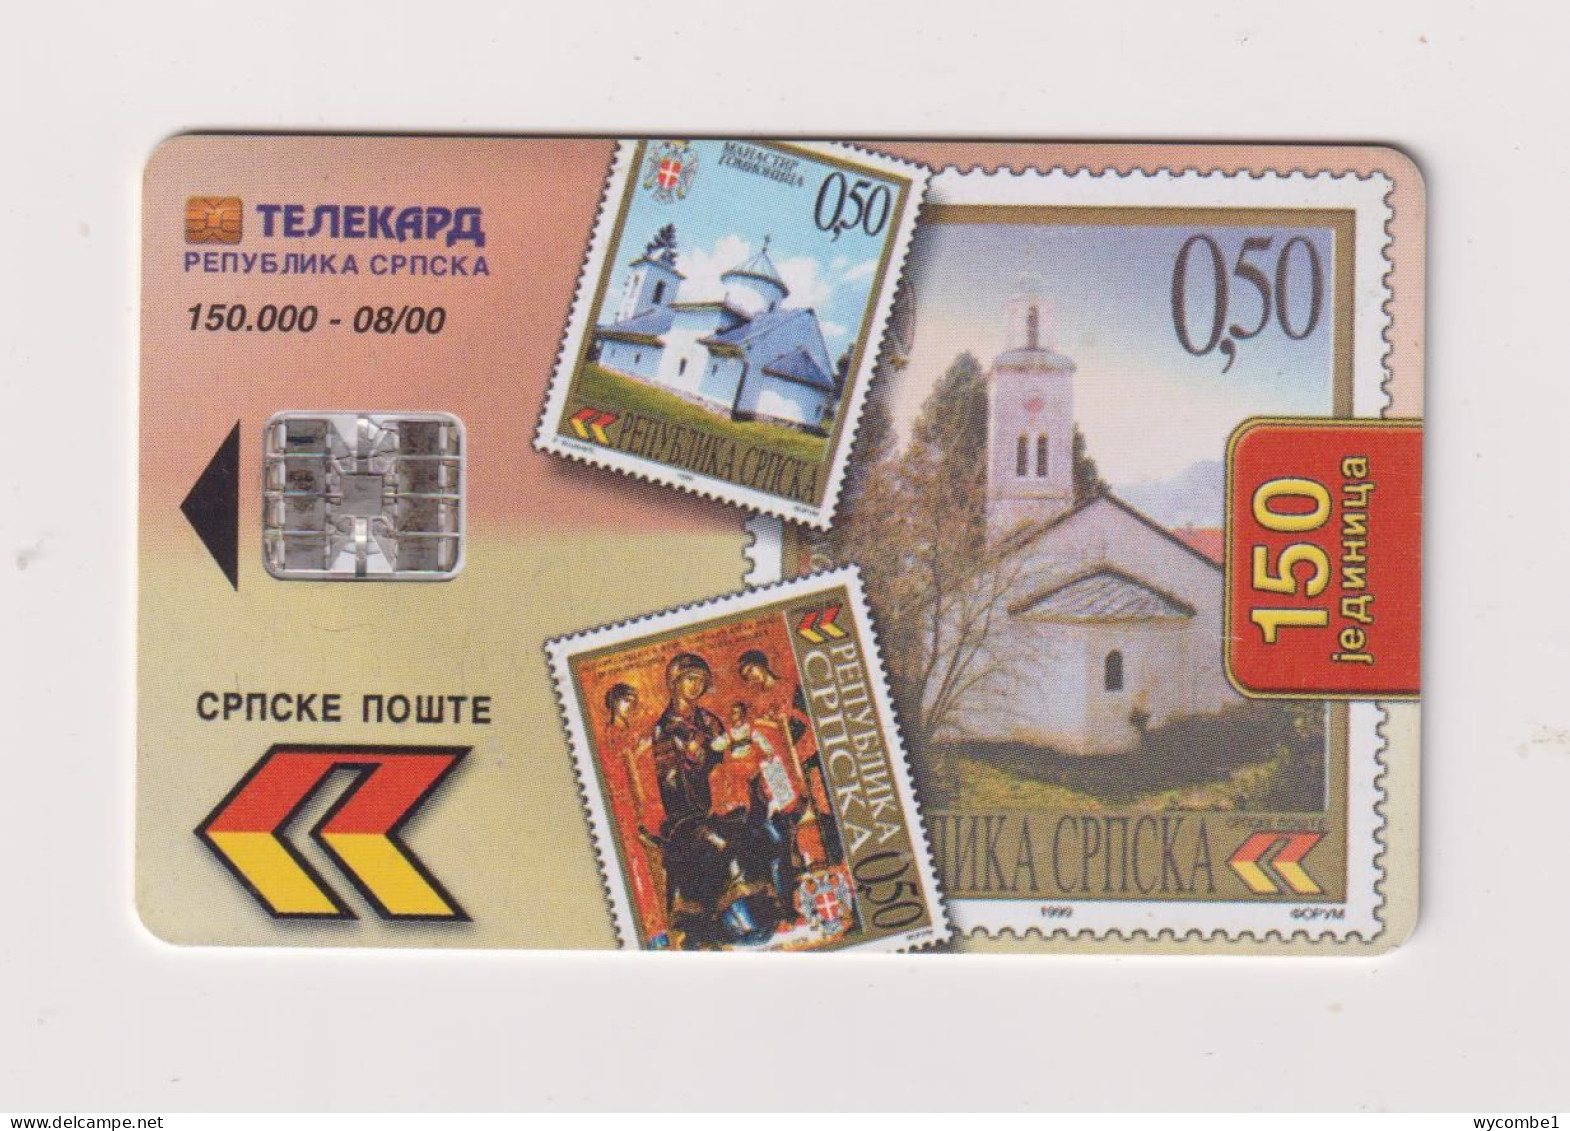 SERBIA  - Postage Stamps Chip Phonecard - Jugoslawien